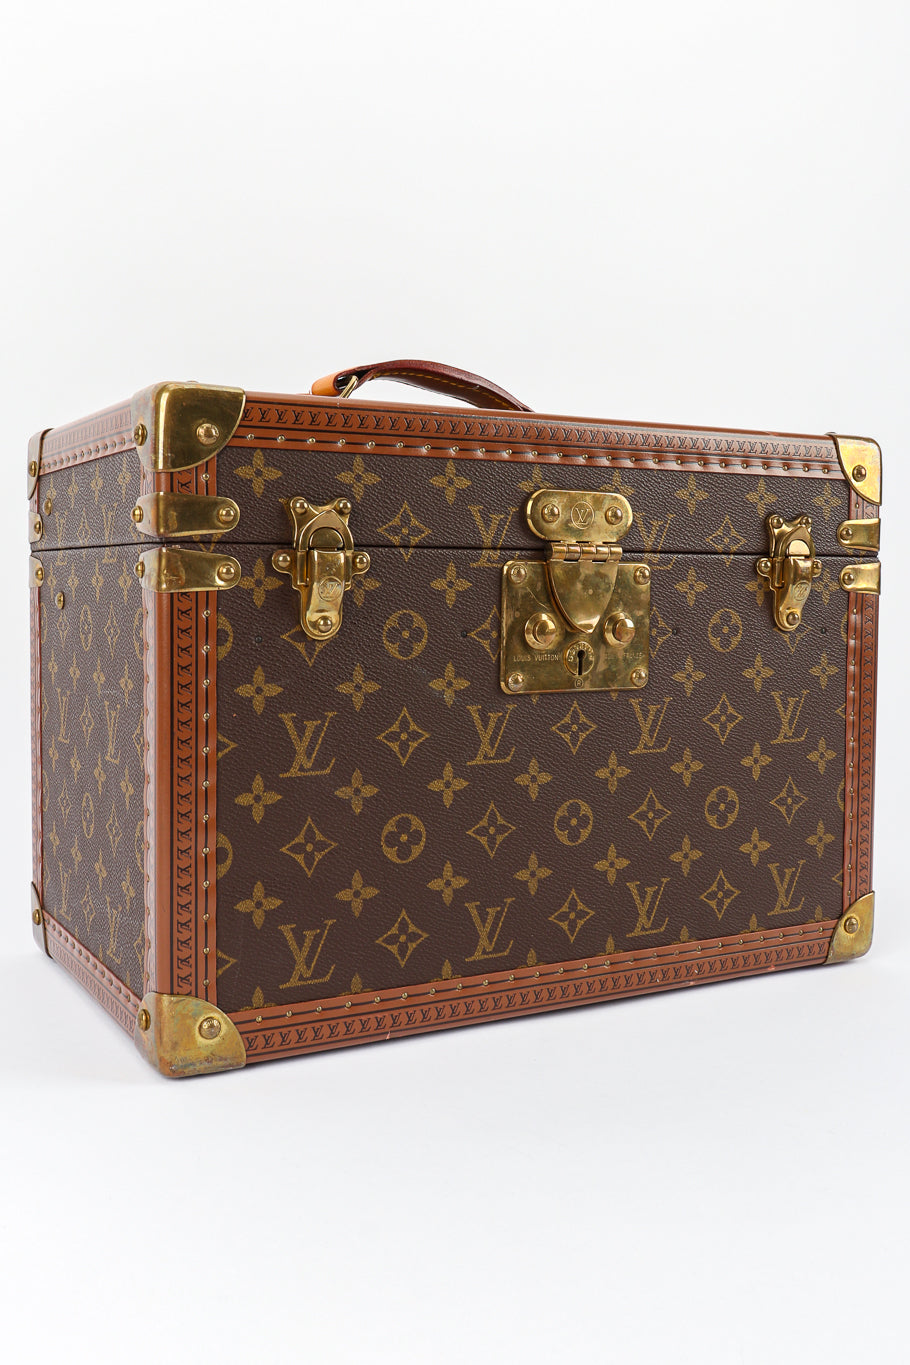 Vintage Louis Vuitton Classic Monogram Vanity Case front view @Recessla